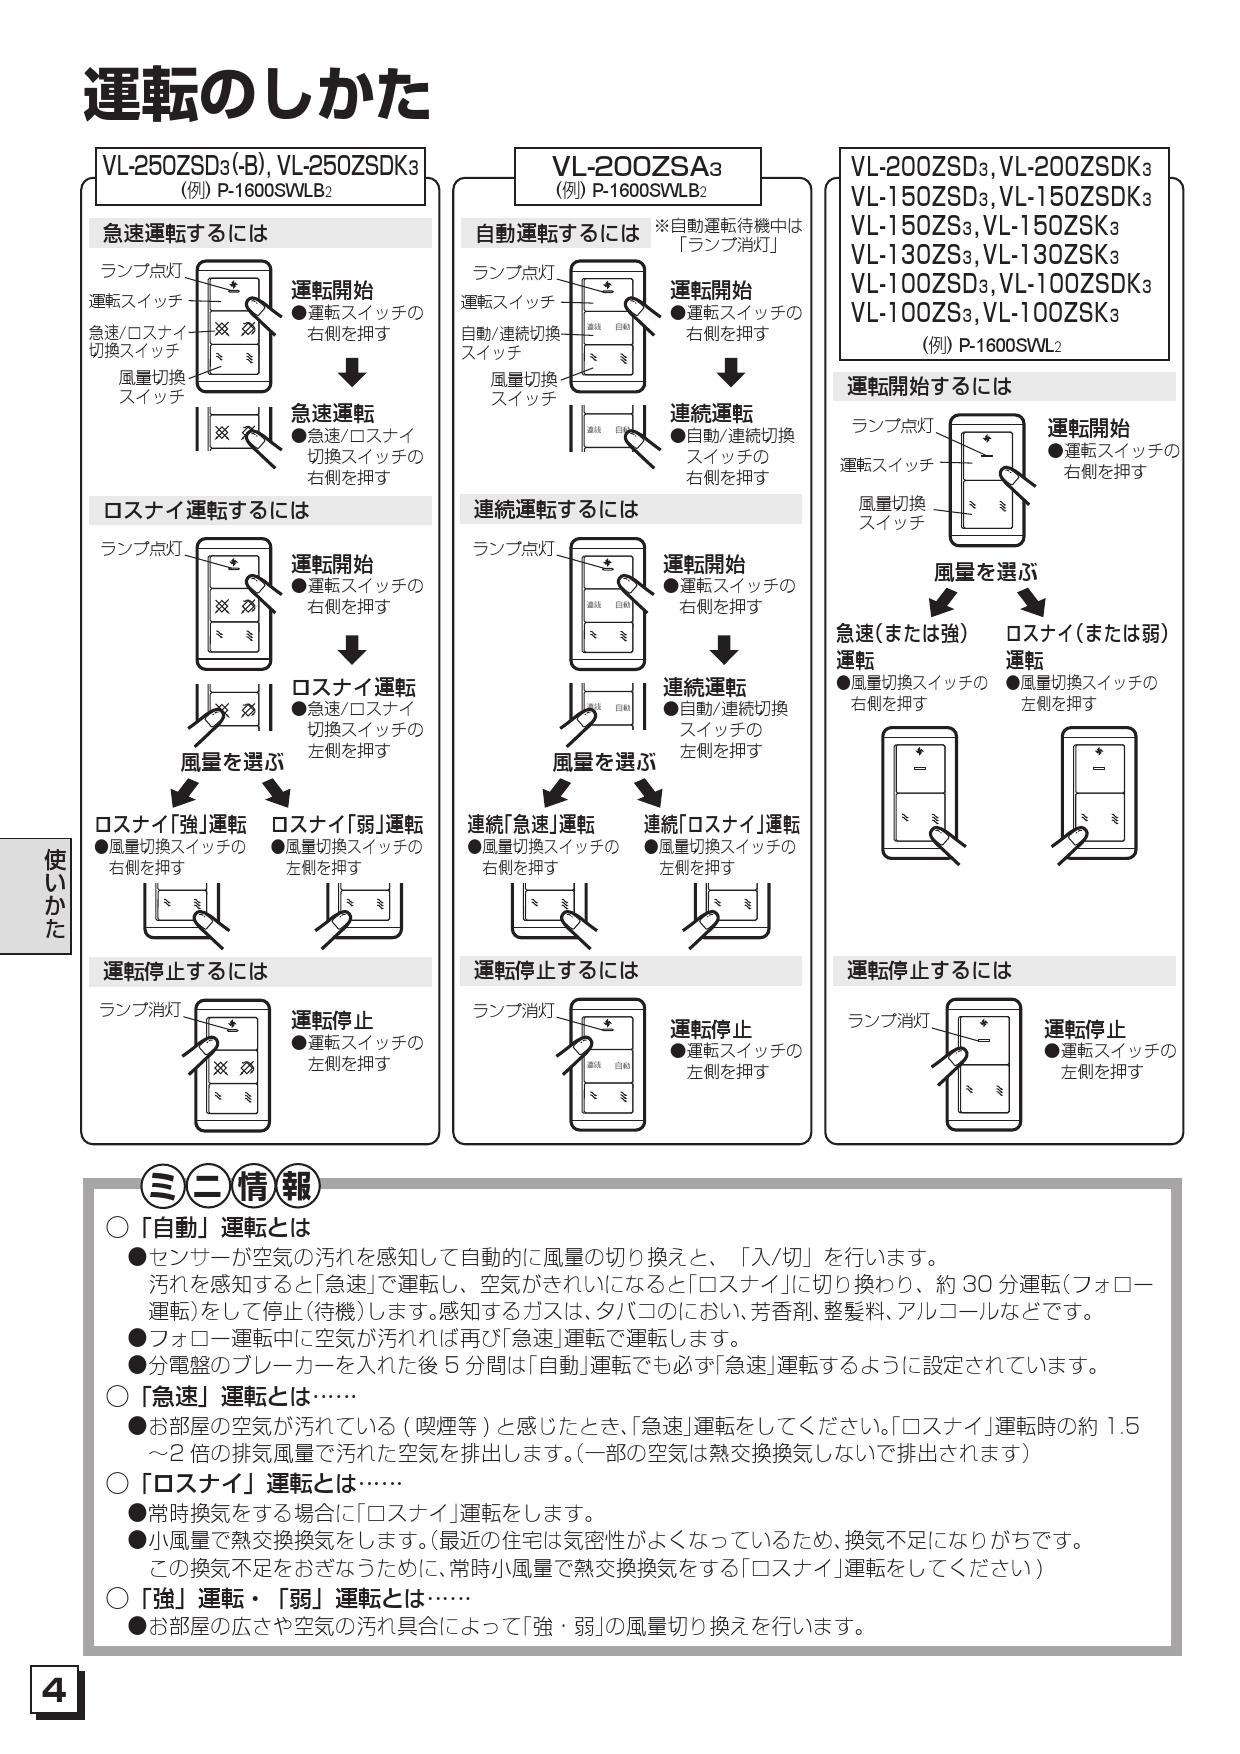 新品未使用 三菱換気扇VL-100ZSD3 おしゃれ 6000円引き sandorobotics.com